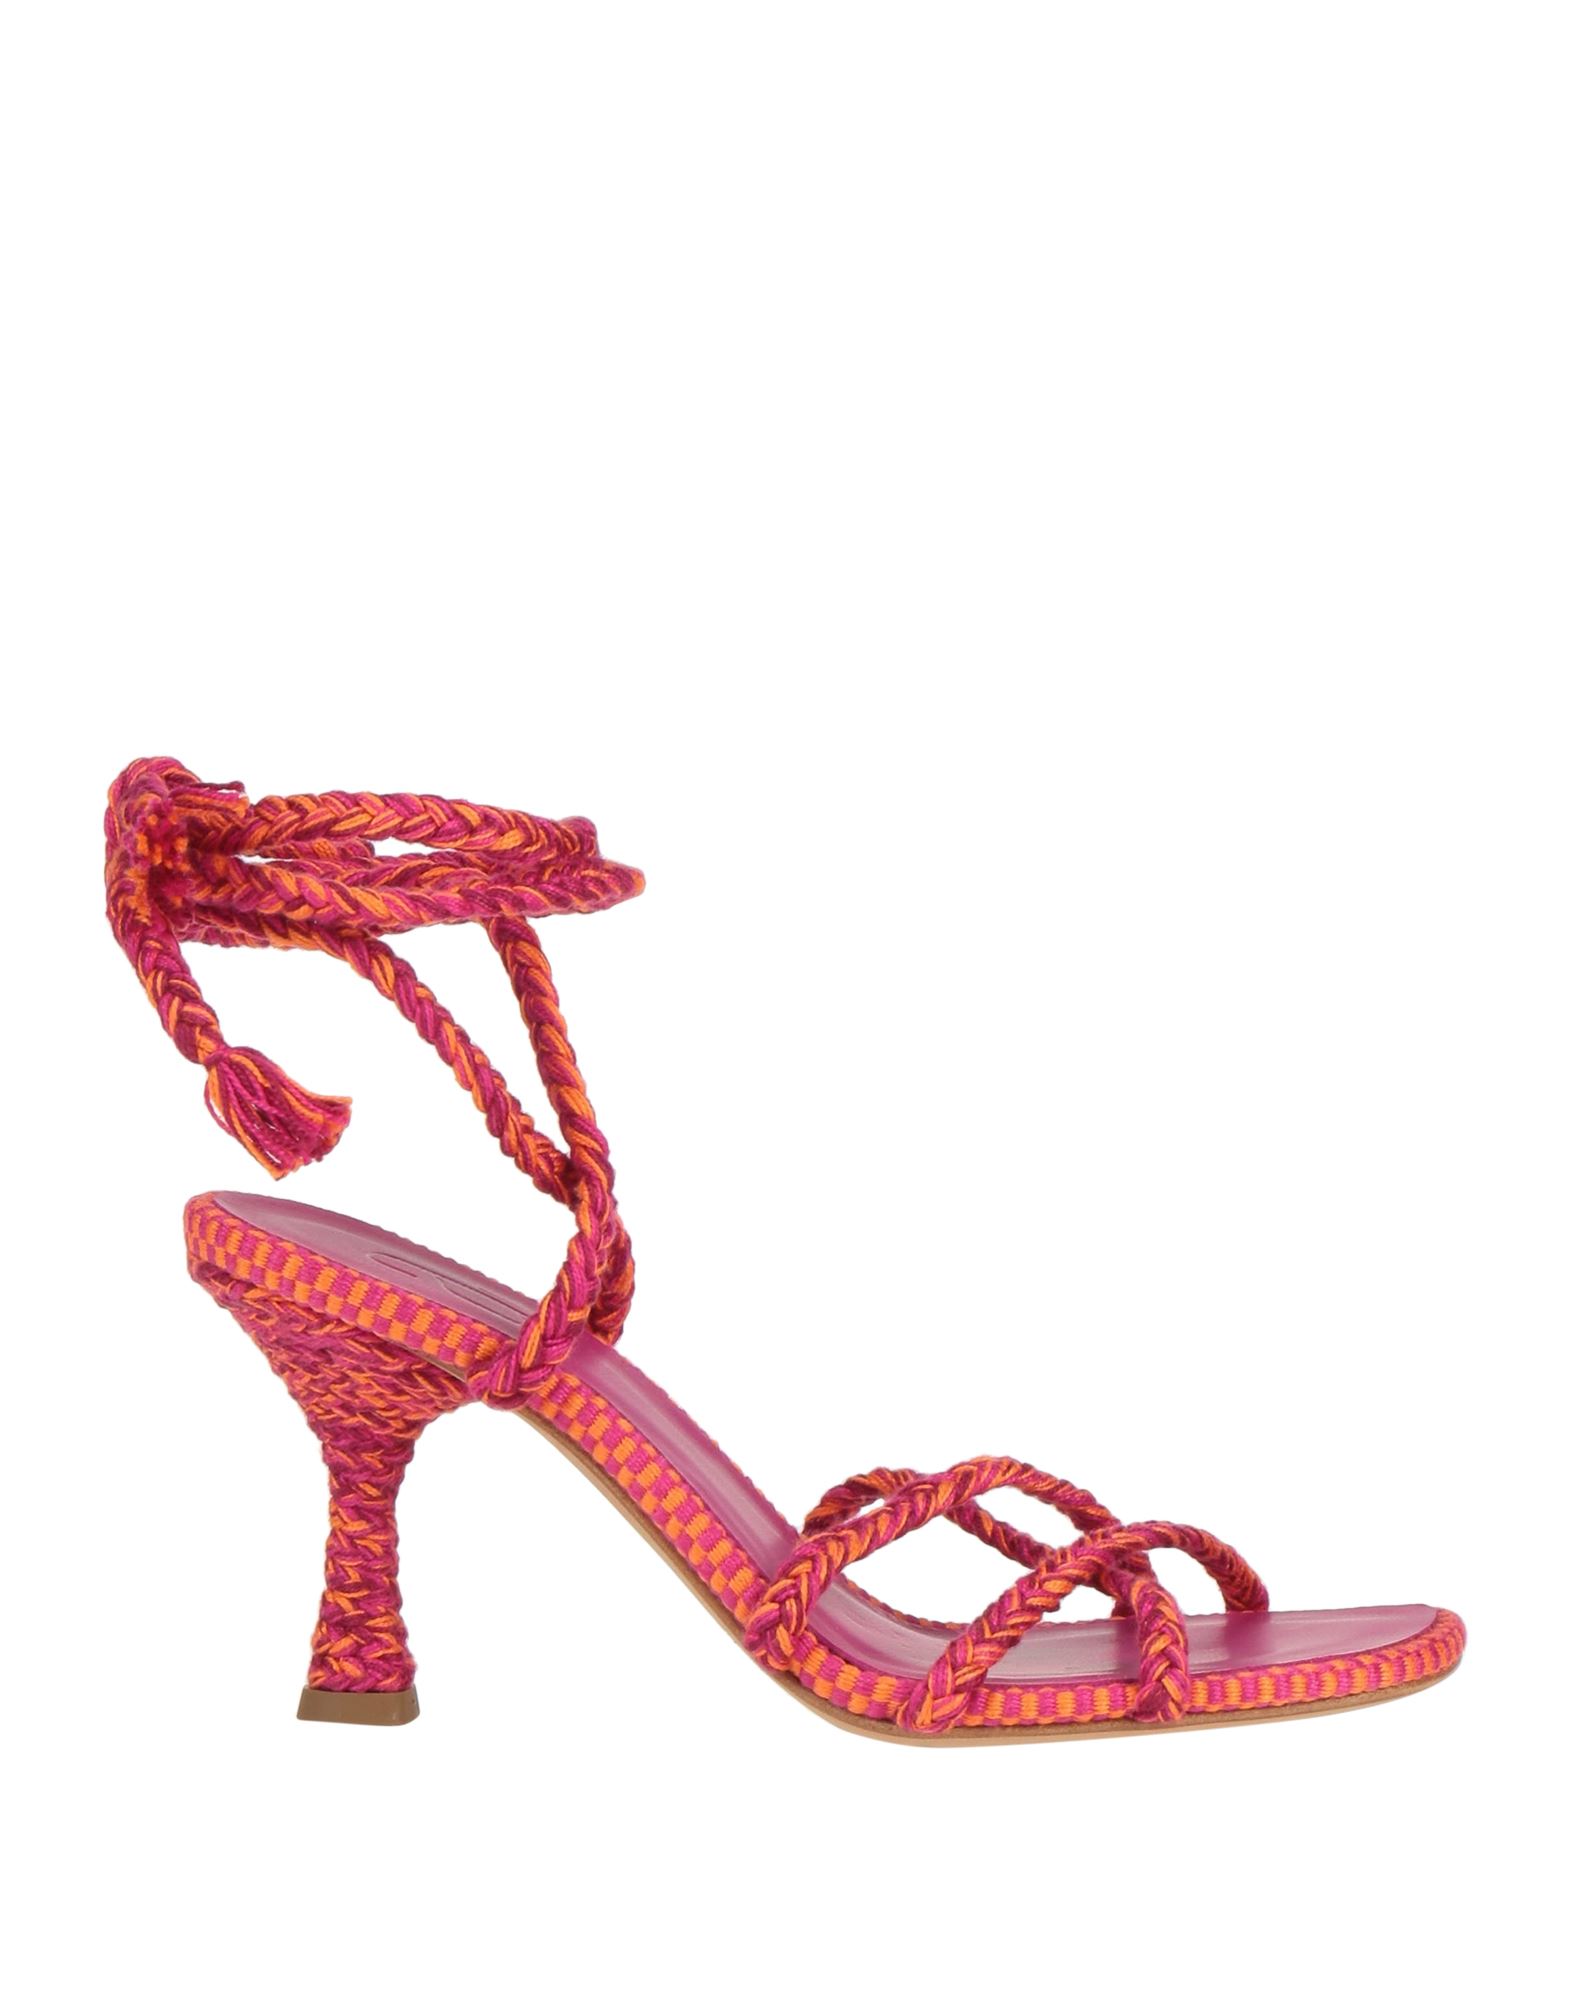 Antolina Paris Sandals In Pink